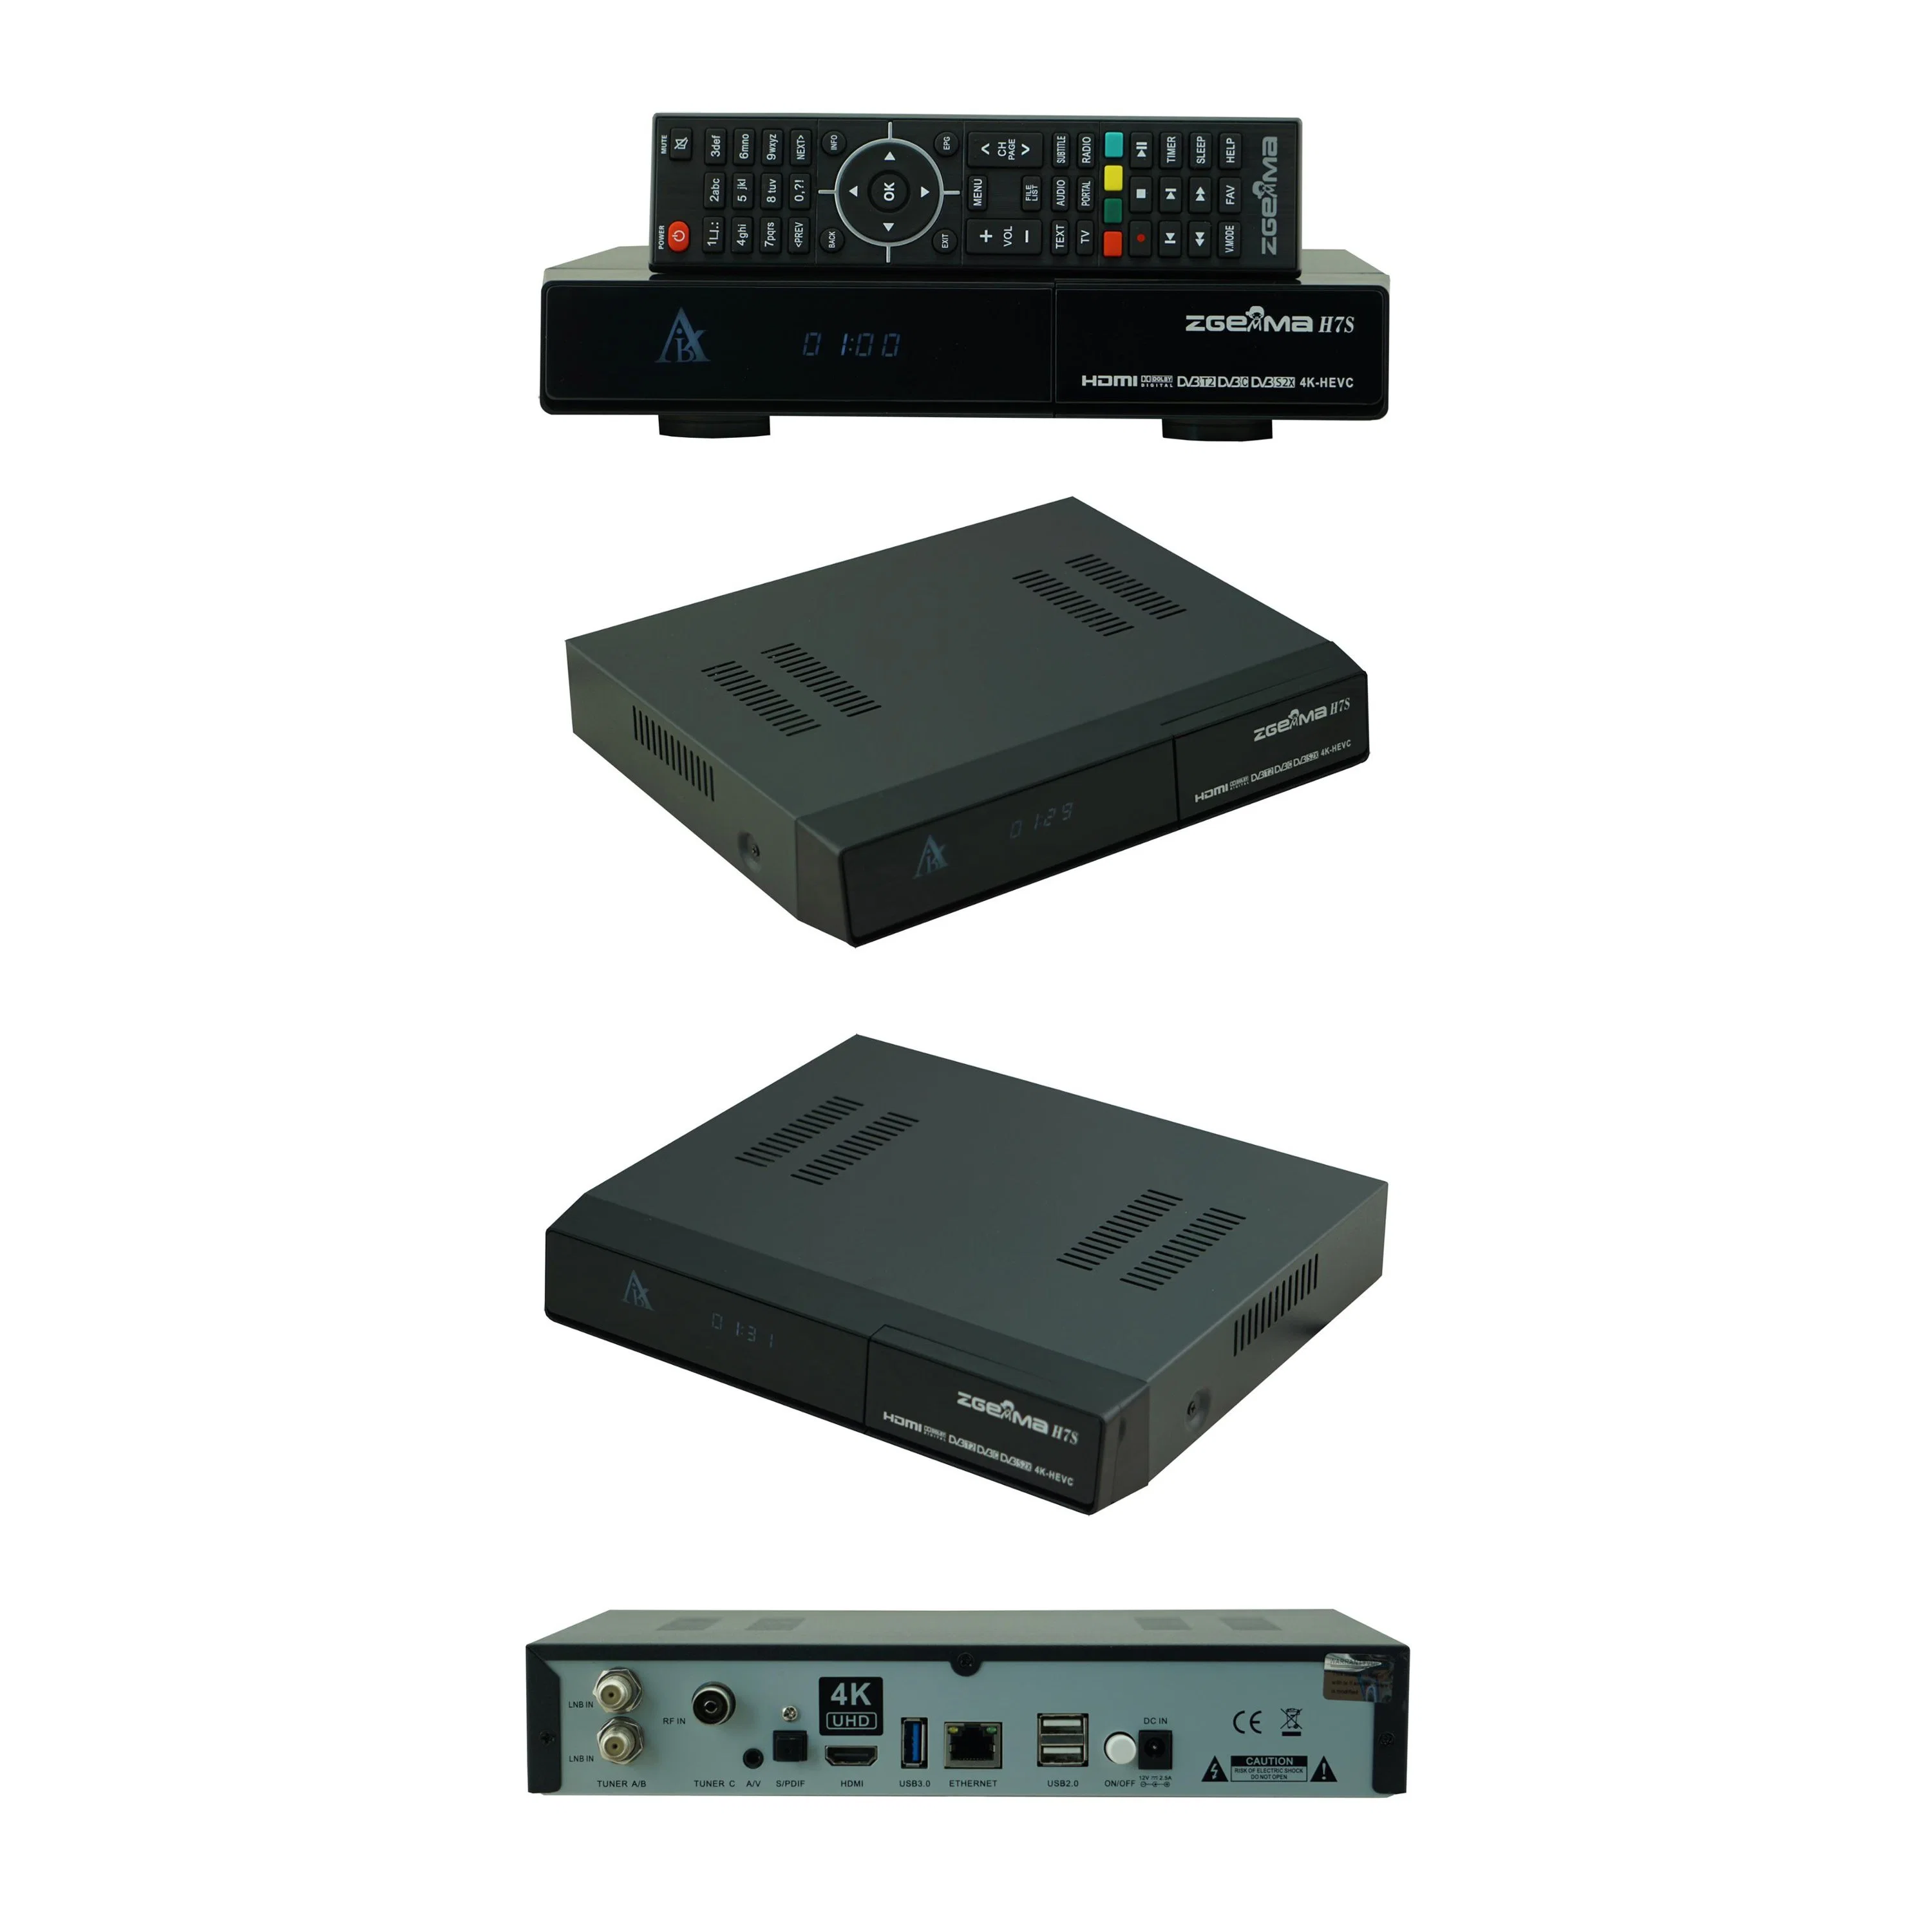 Расширьте свои возможности для развлечений с помощью Zgemma H7s - 16 ГБ eMMC Flash, 1 ГБ памяти DDR3 Satellite TV ресивер